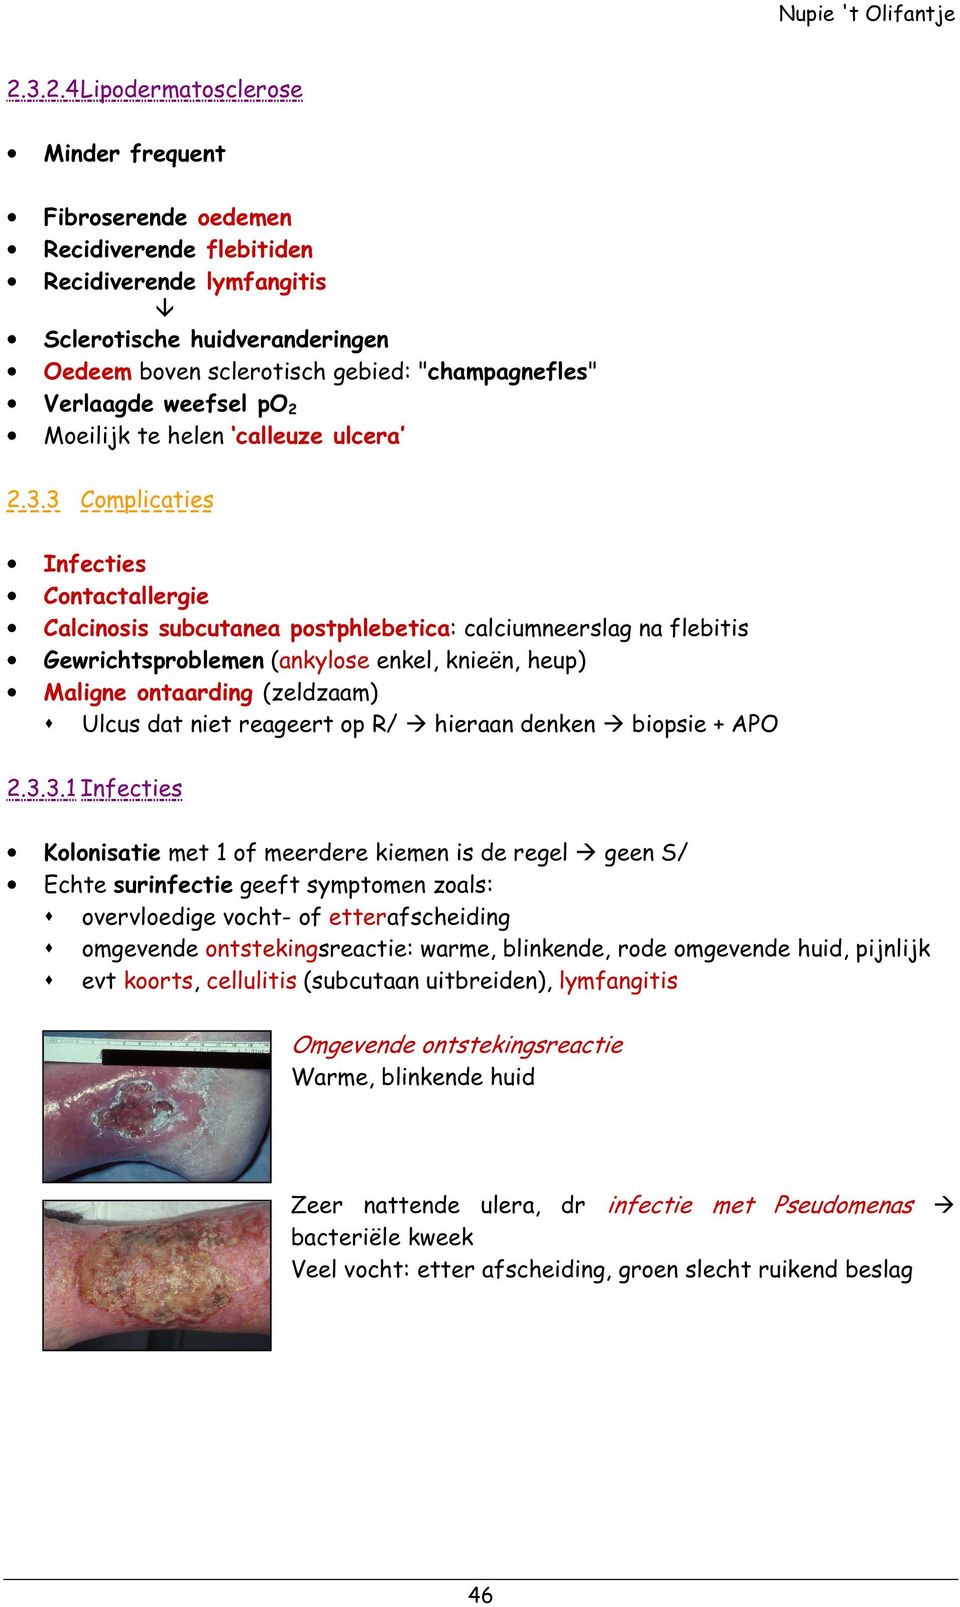 3 Complicaties Infecties Contactallergie Calcinosis subcutanea postphlebetica: calciumneerslag na flebitis Gewrichtsproblemen (ankylose enkel, knieën, heup) Maligne ontaarding (zeldzaam) Ulcus dat